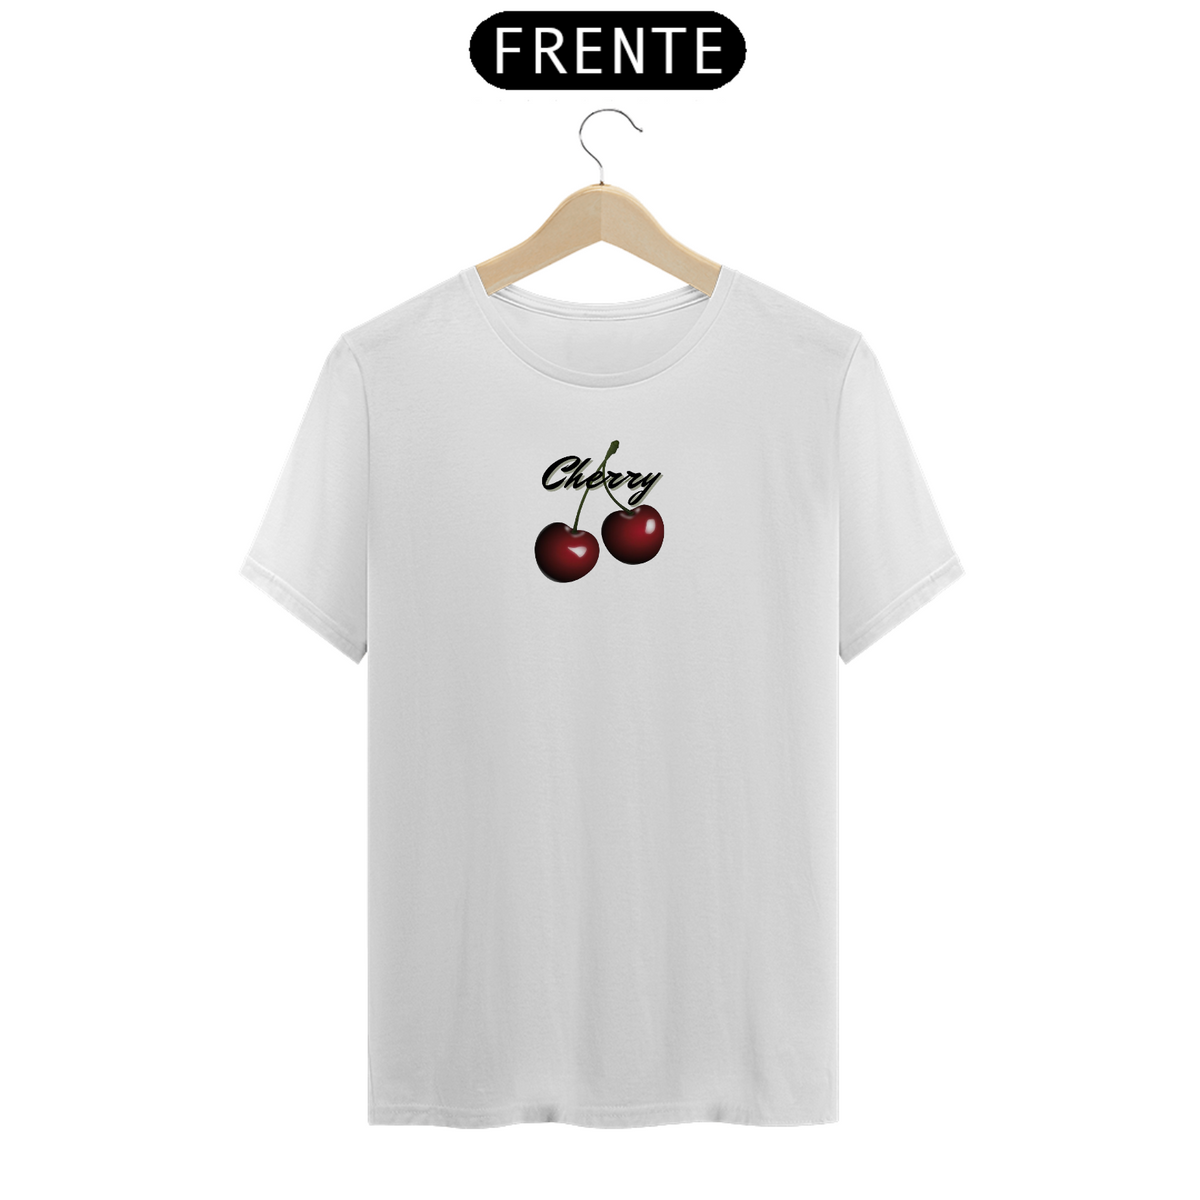 Nome do produto: T-Shirt Cherry